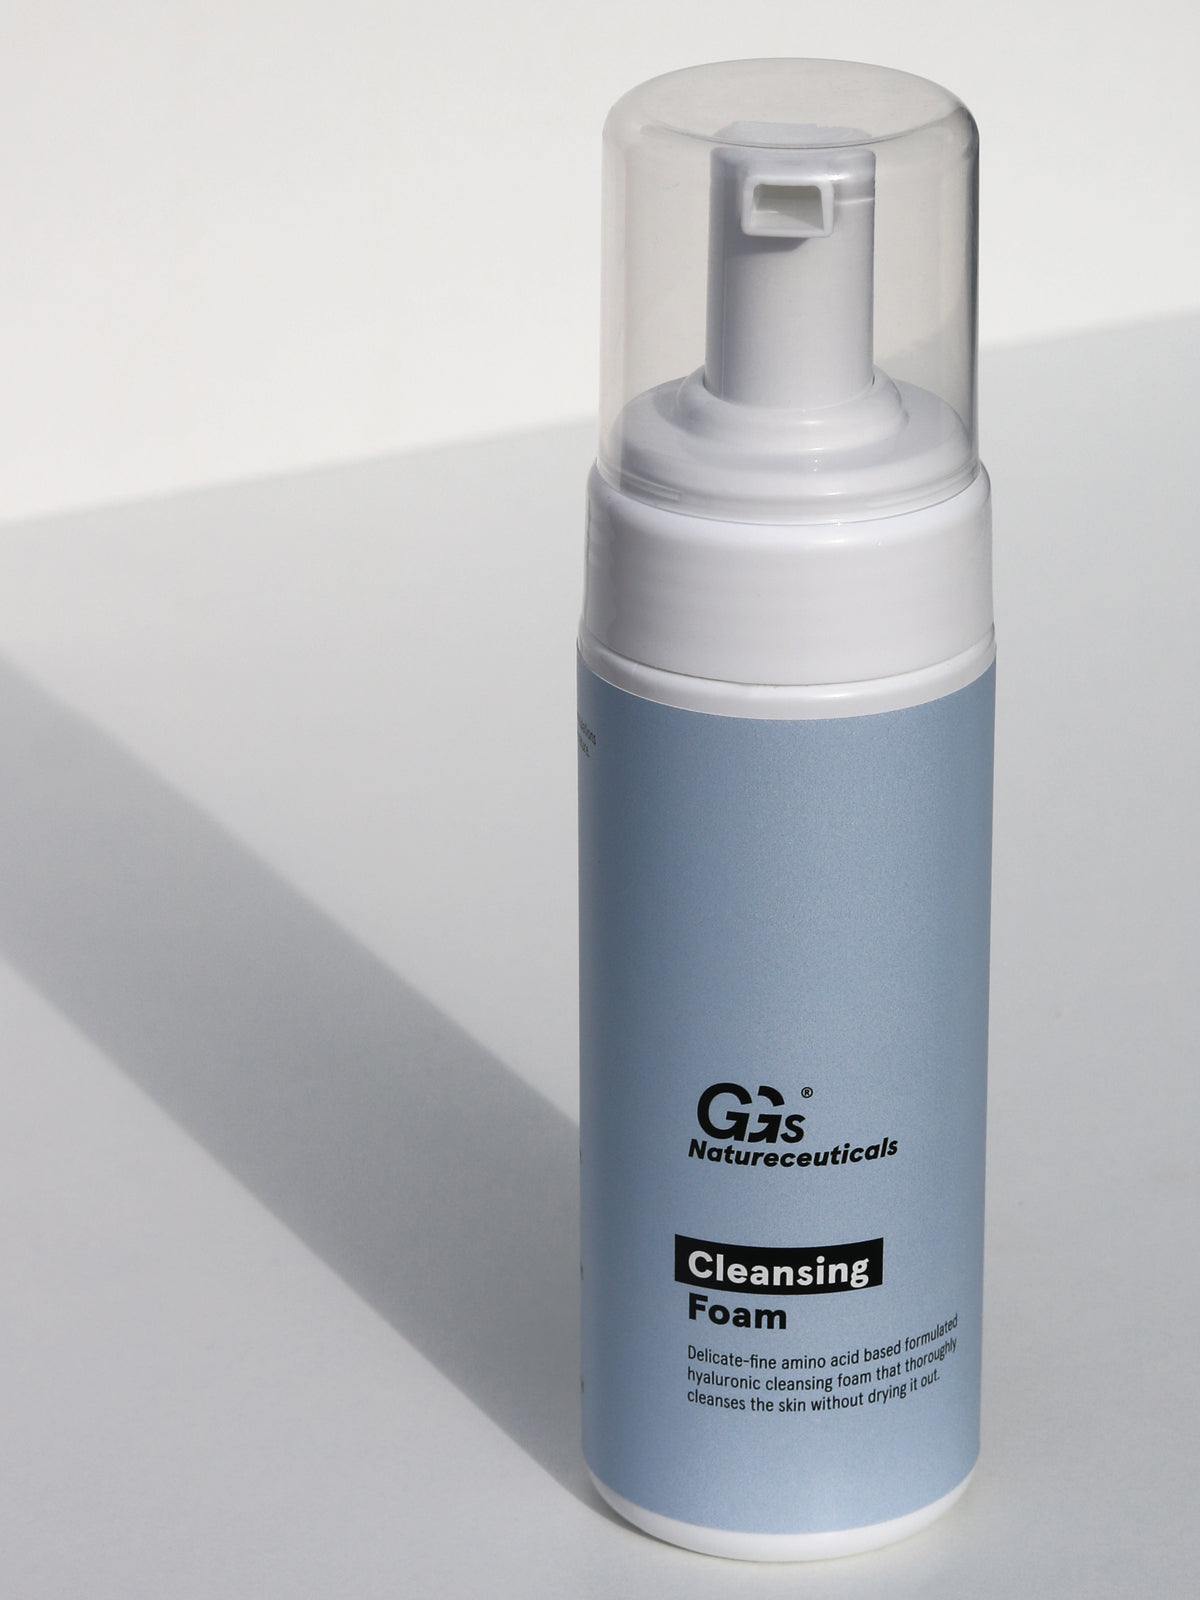 Hyaluronic Foam Reinigungsschaum Cleansing Natureceuticals | | GGs